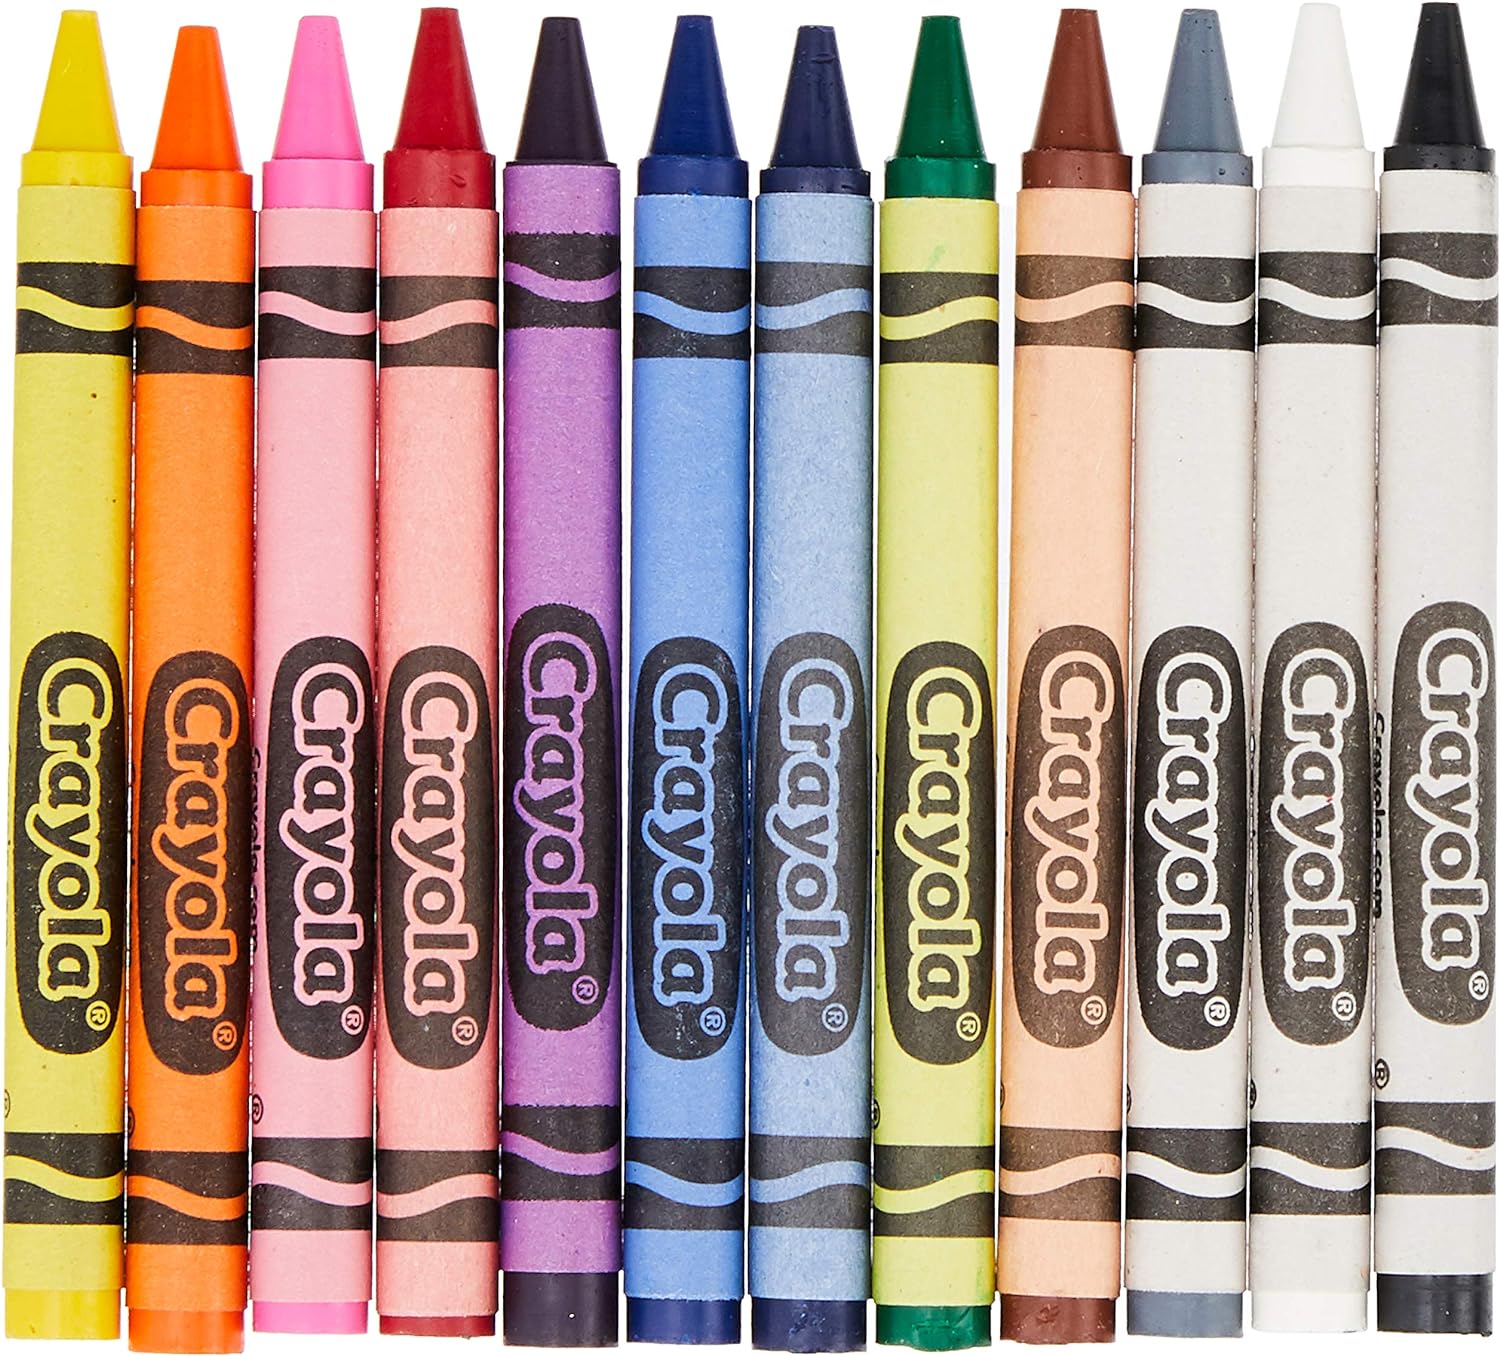 Crayola Multicolor Crayons Pack of 12 523012